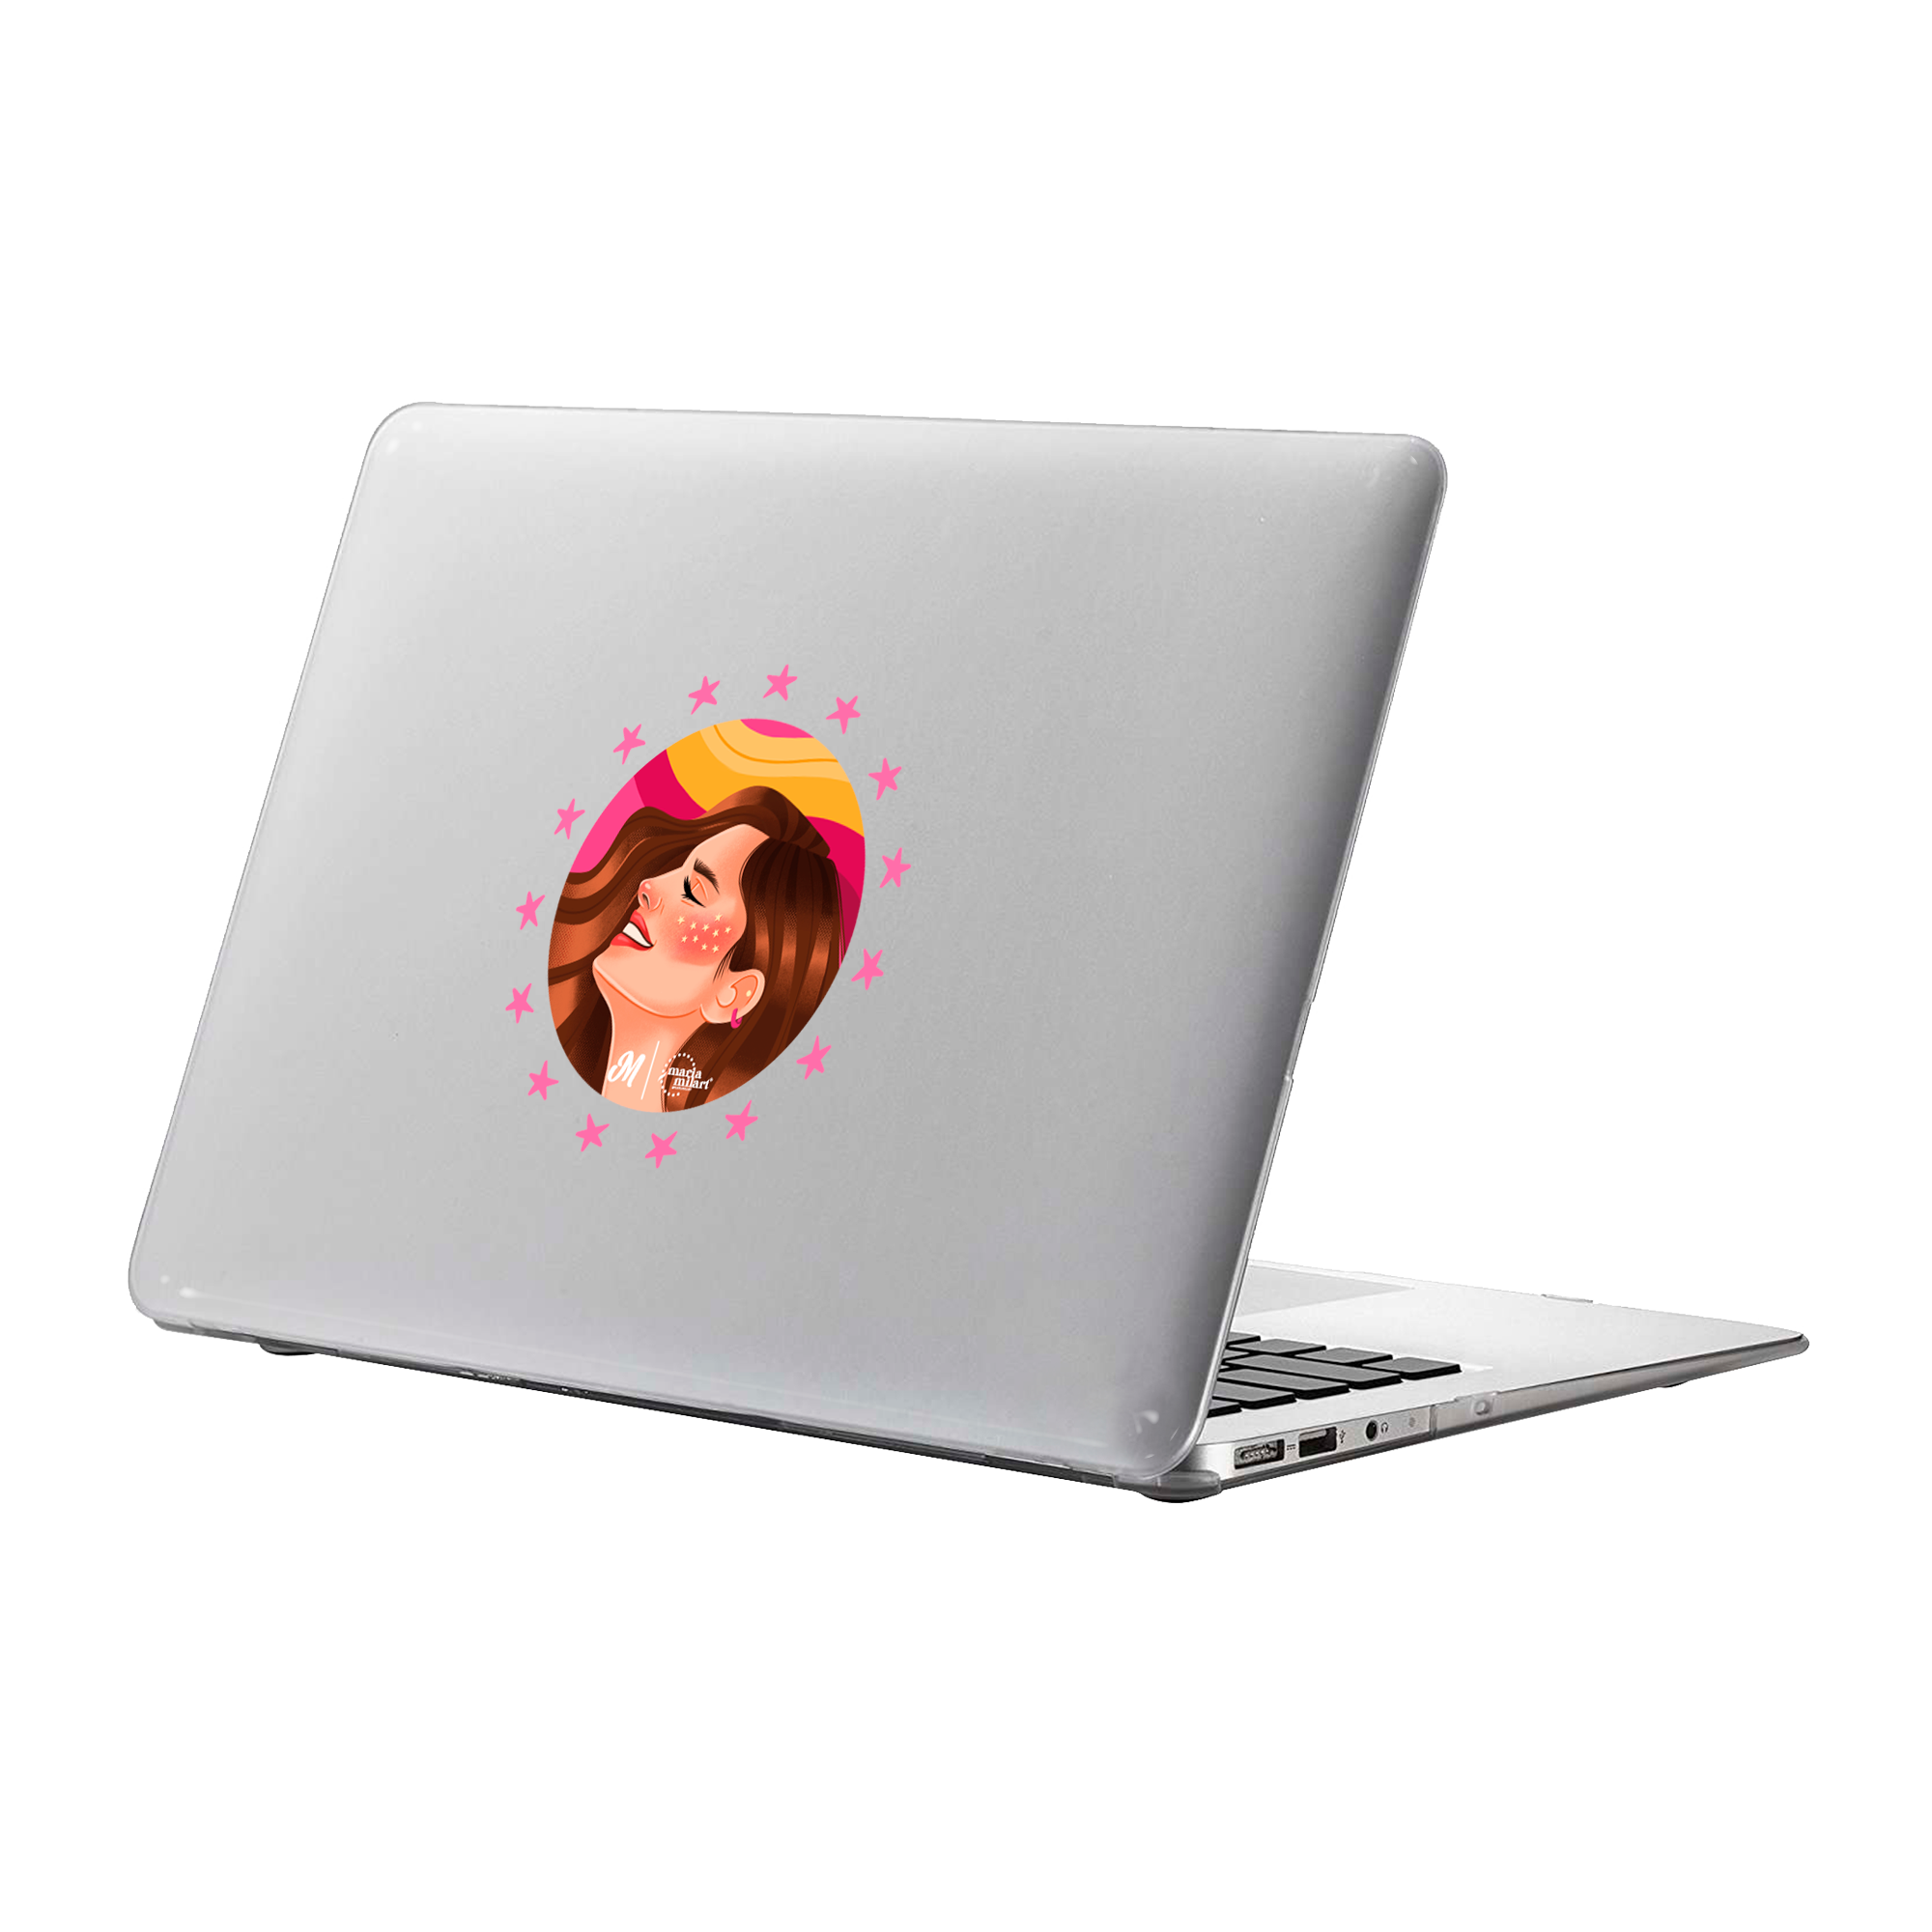 Pecas Radiantes MacBook Case - Mandala Cases